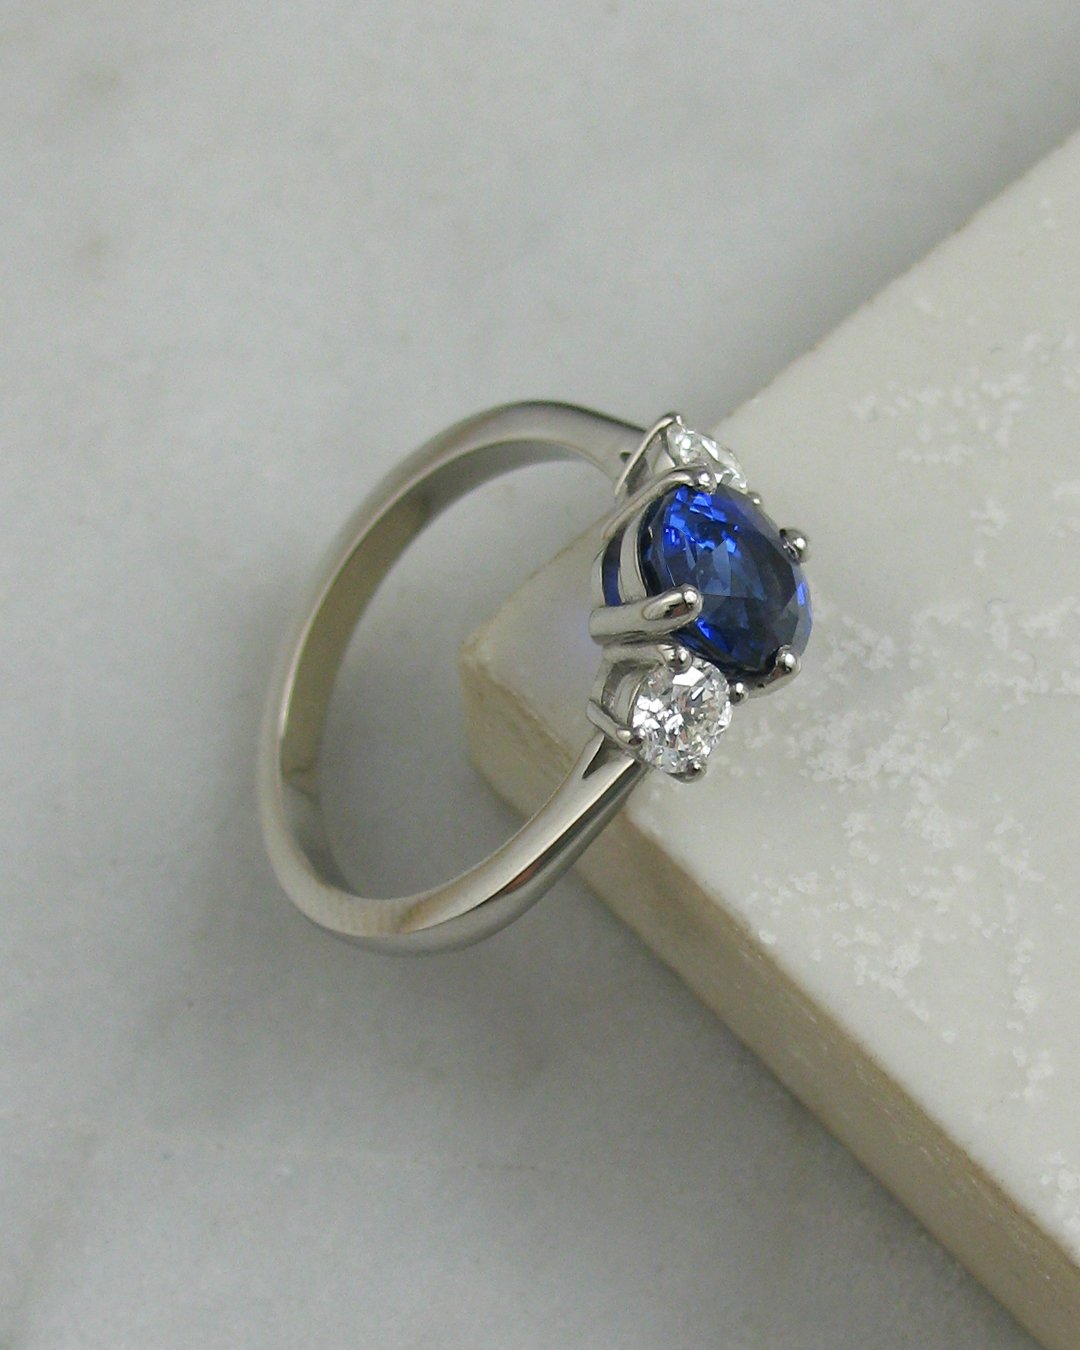 A beautiful bespoke sapphire ring